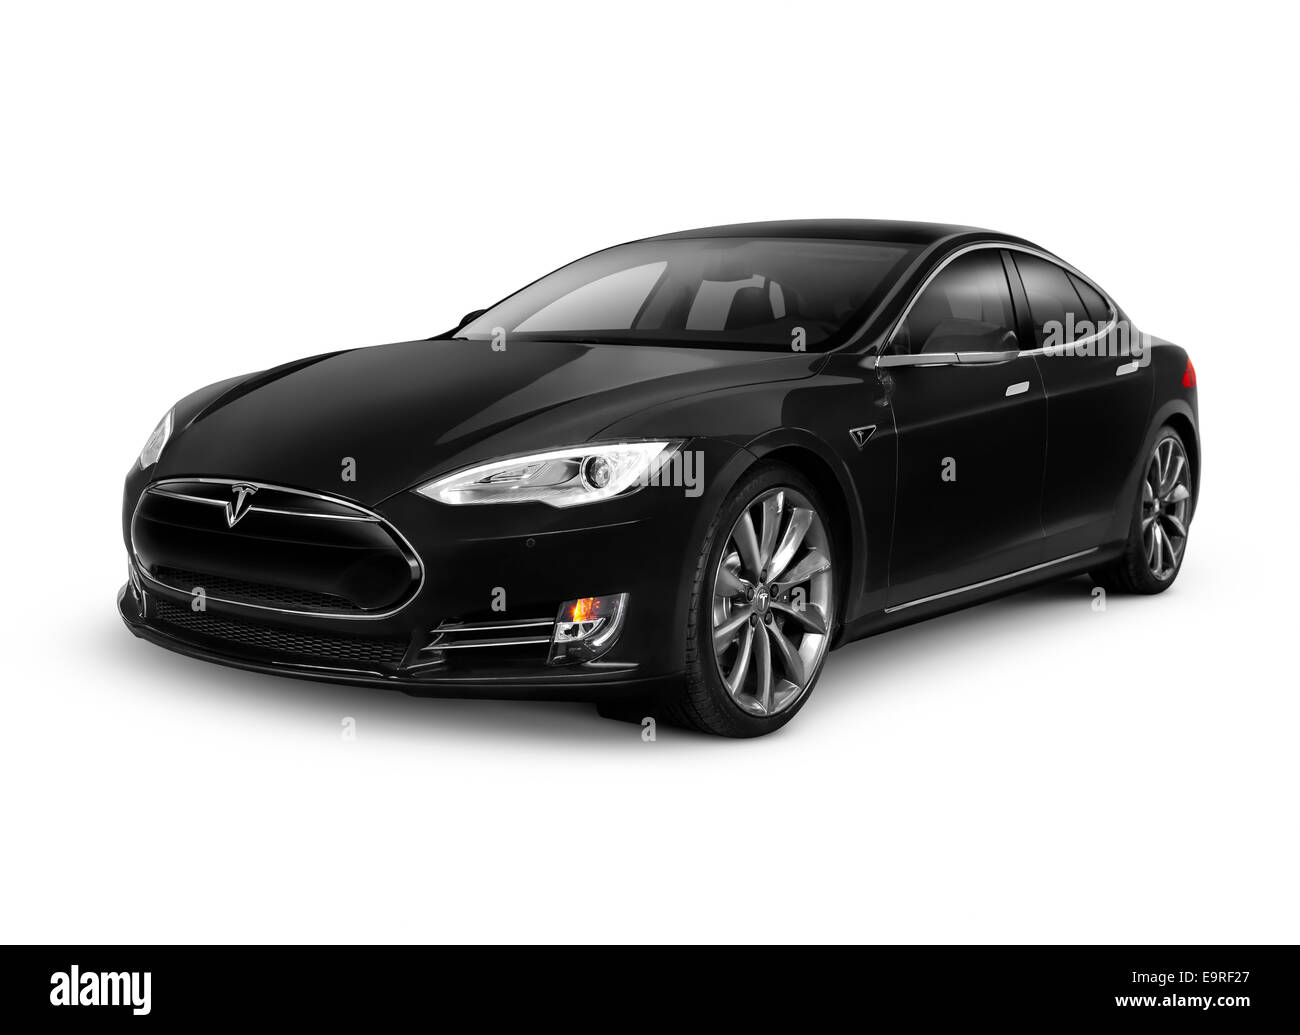 Licence et tirages sur MaximImages.com - Noir 2014 Tesla modèle S voiture électrique de luxe isolée sur fond blanc avec chemin de coupure Banque D'Images